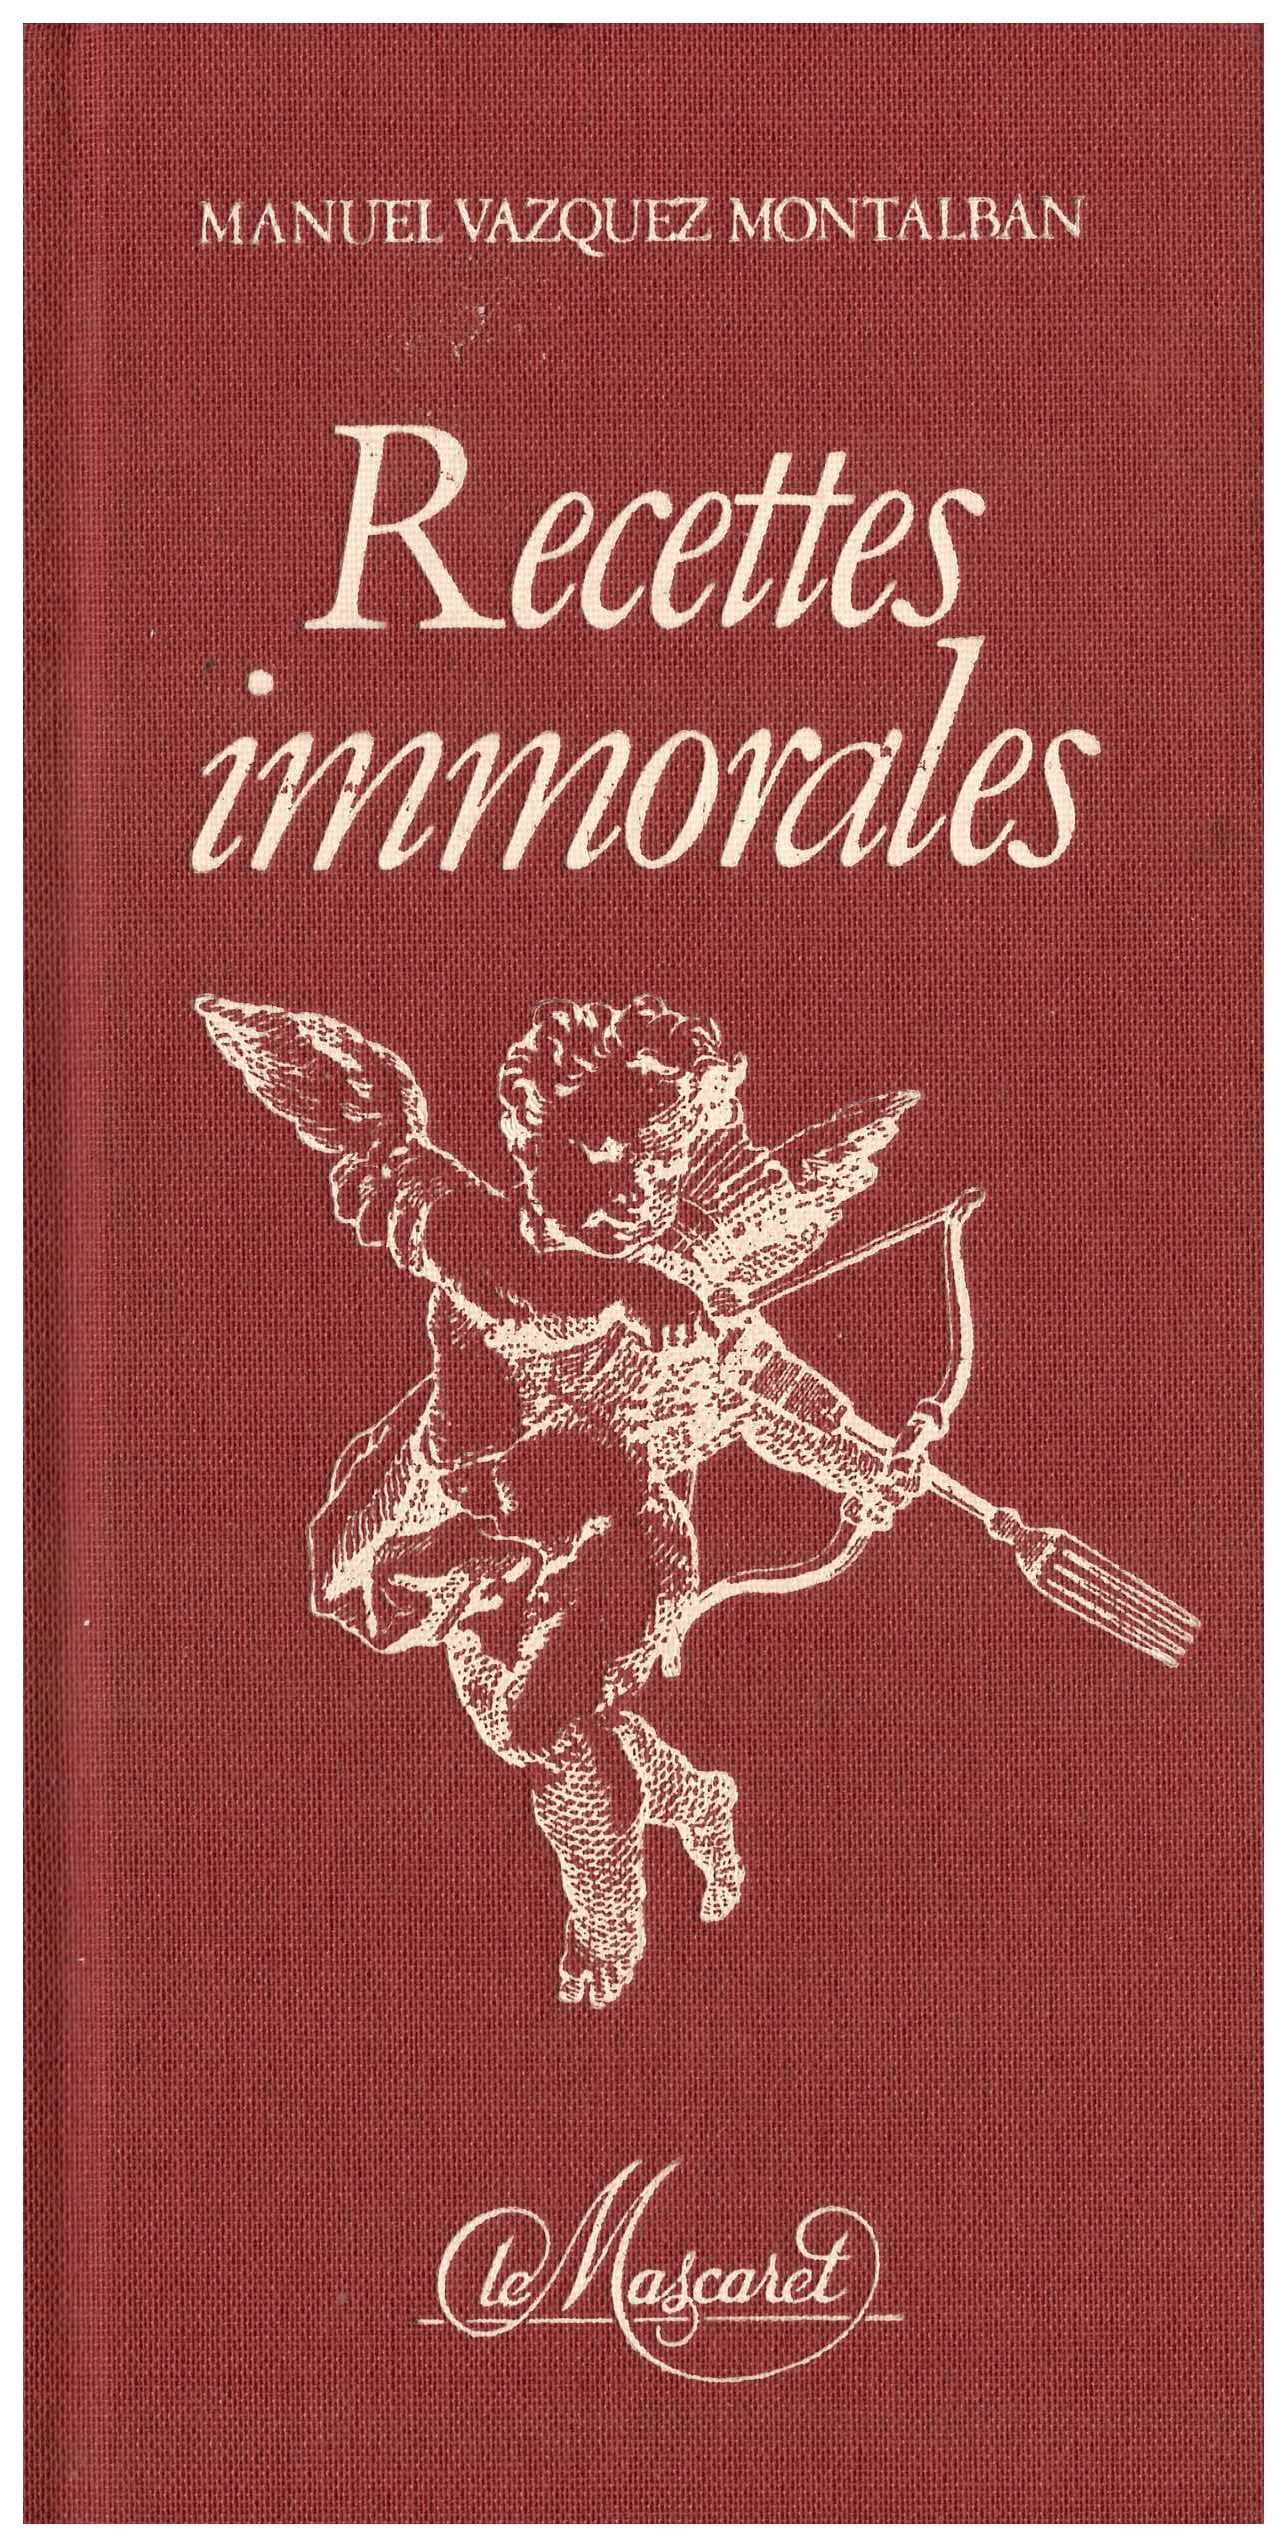 Recettes immorales – Le livre